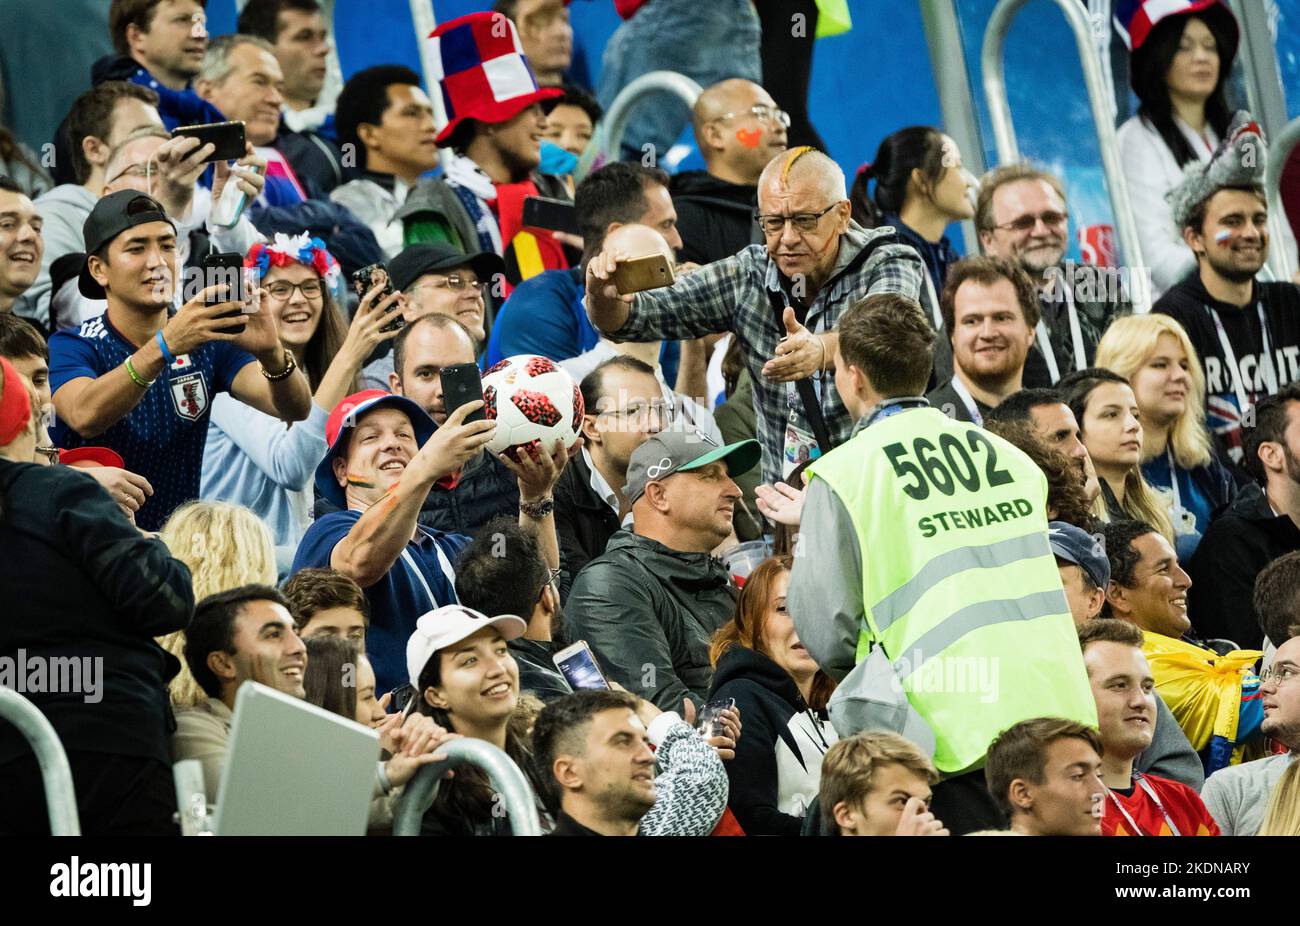 St. Petersburg , 10.07.2018 Serie Ordner erschnappt sich den Spiel Ball von einem Fan der ein Selfie machen mšchte Frankreich - Belgien Copyright (nur Stockfoto